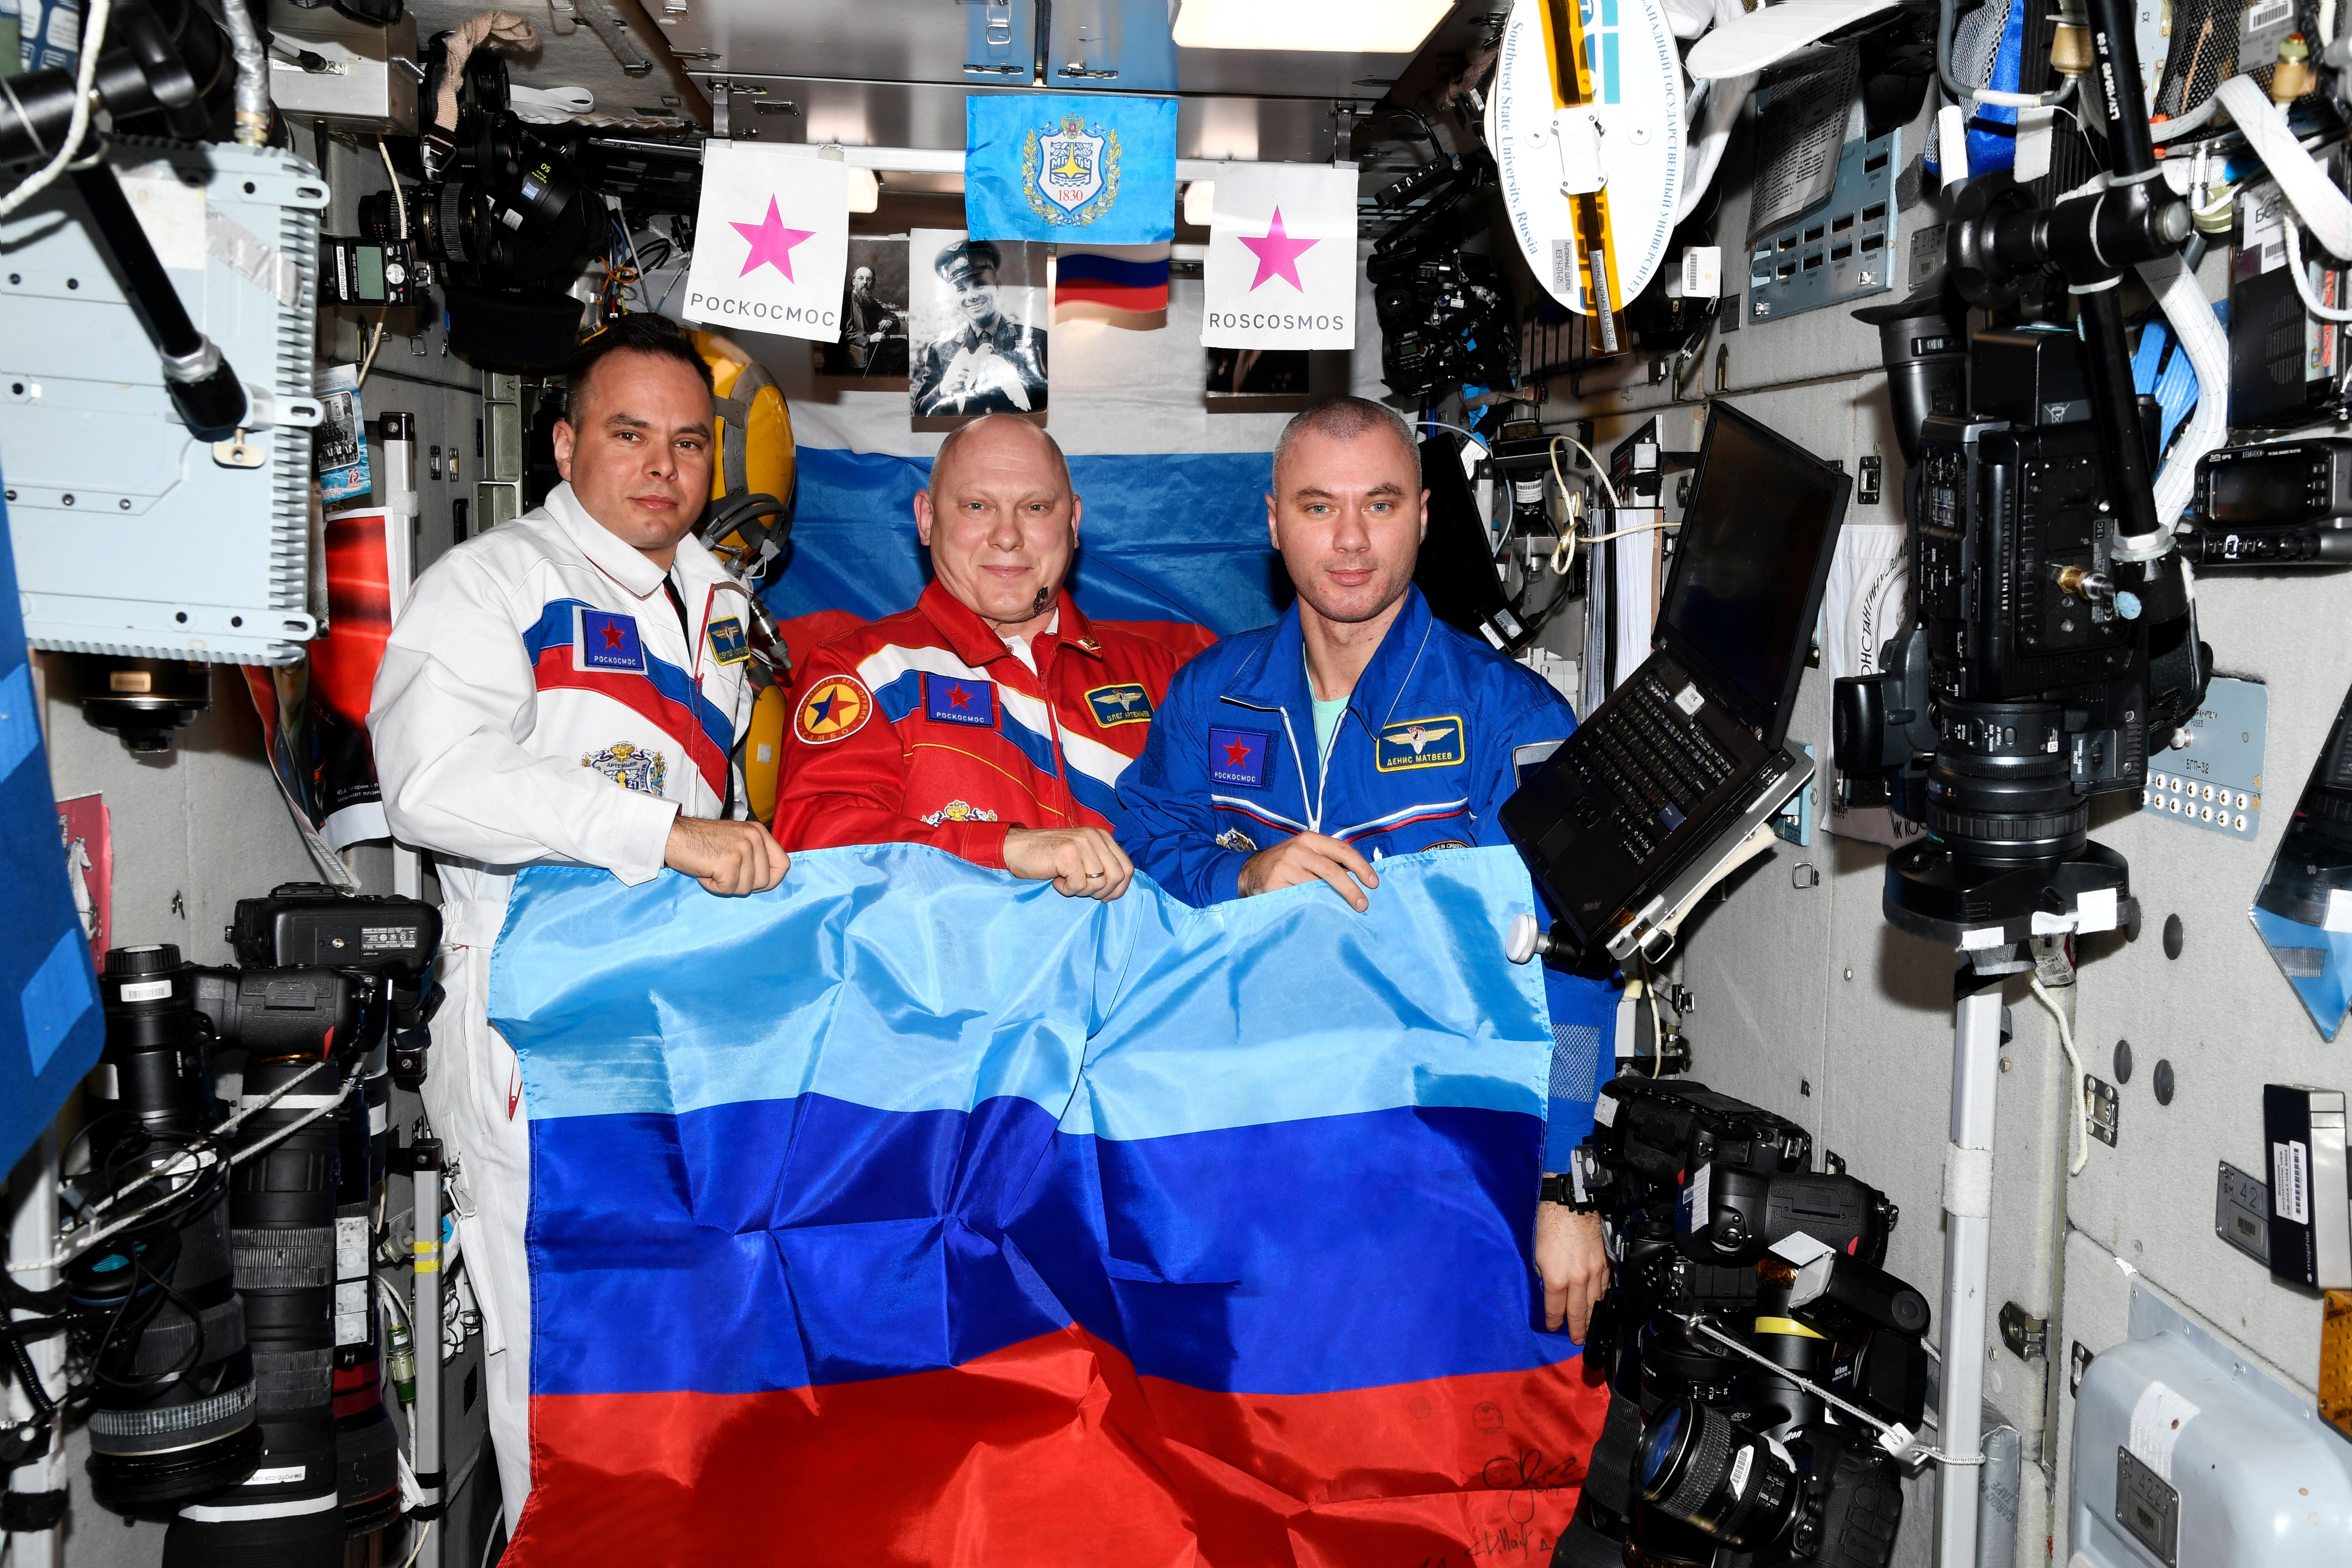 นักบินอวกาศชาวรัสเซีย Oleg Artemiev, Denis Matveev และ Sergey Korsakov สวมธงชาติสาธารณรัฐประชาชน Lugansk ที่ประกาศตัวเองบนสถานีอวกาศนานาชาติ (ISS) ในภาพนี้เผยแพร่ 4 กรกฎาคม 2022 (Roscosmos/REUTERS)